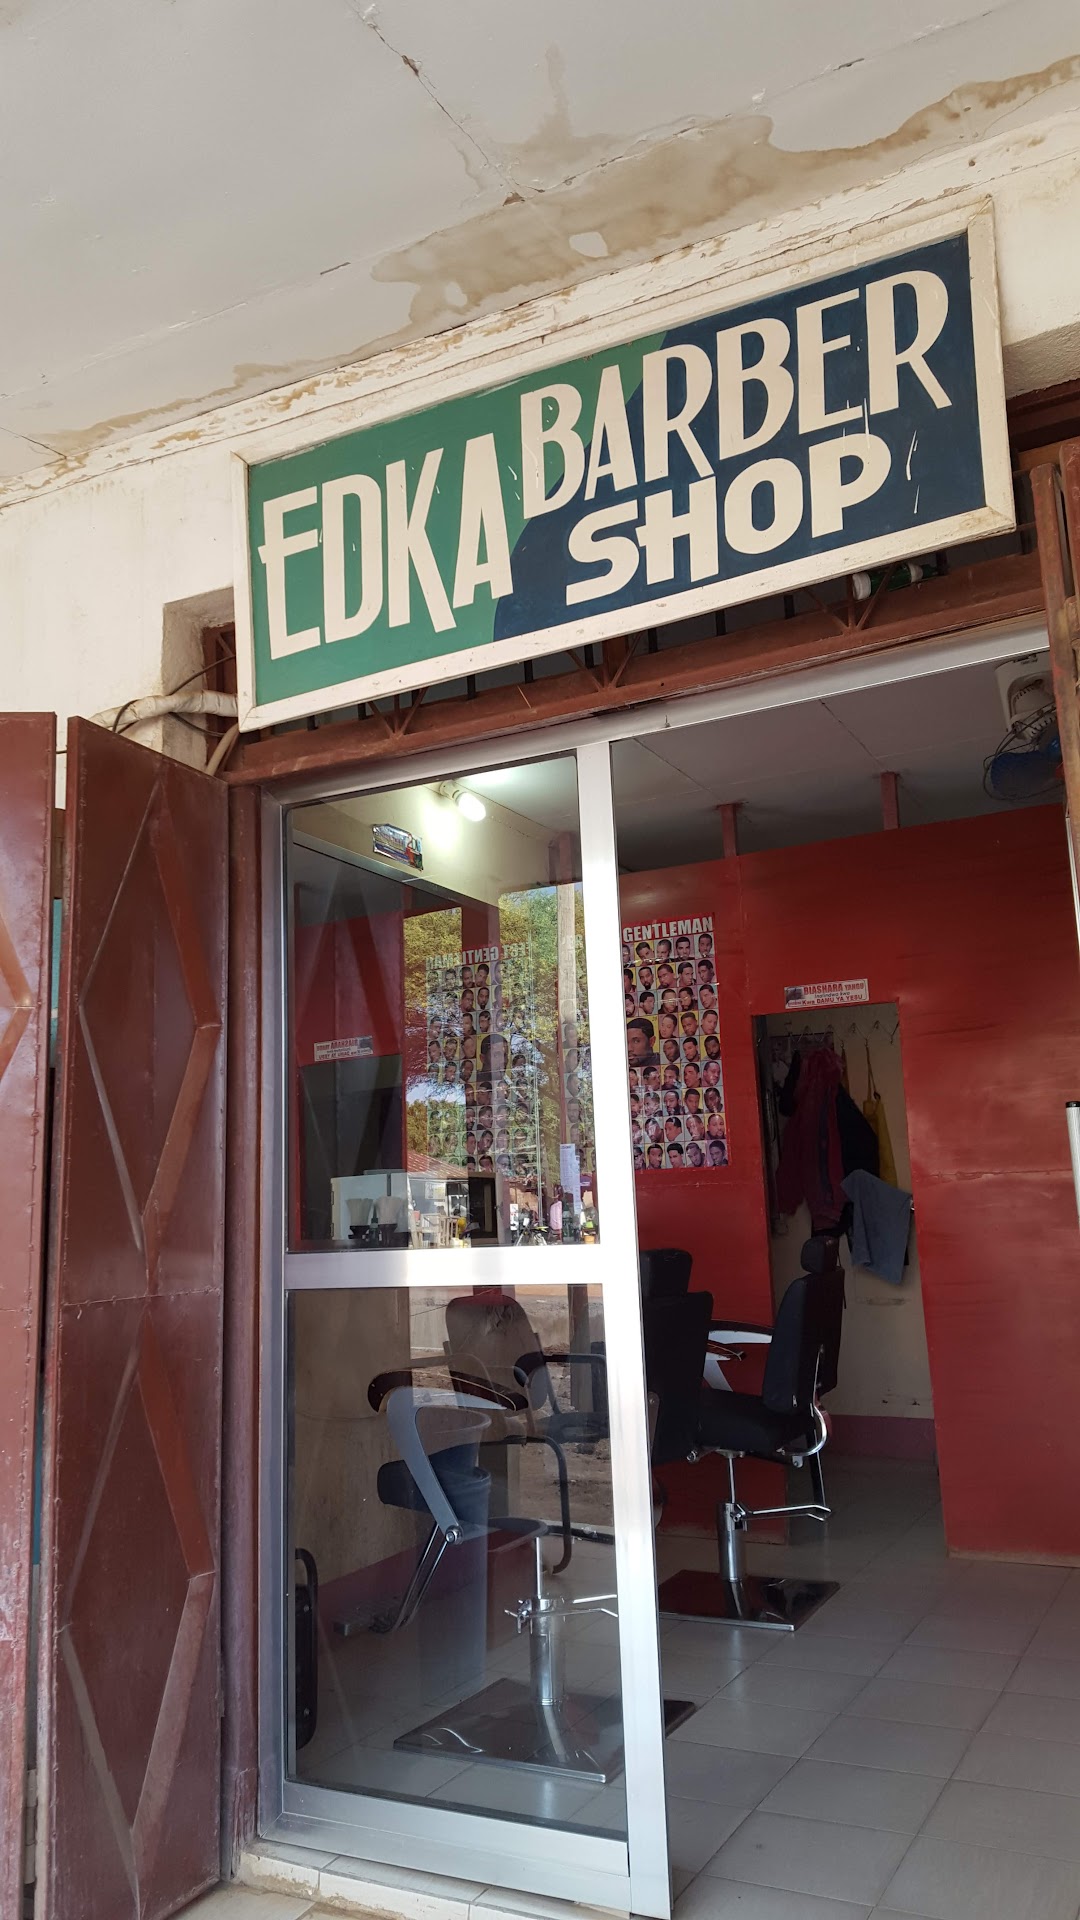 EDKA Barber Shop